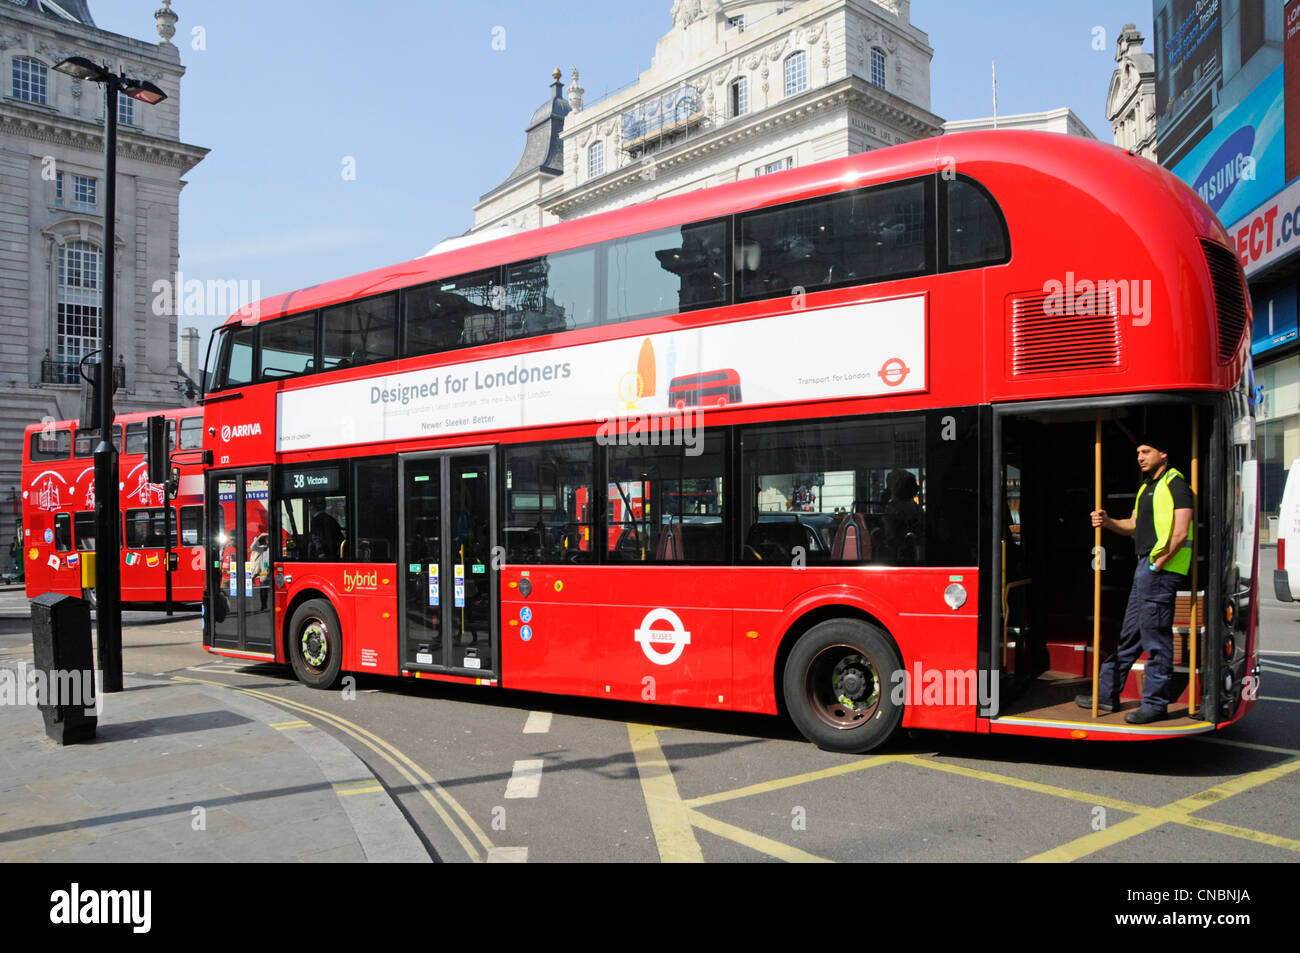 Il passeggero in piedi su aprire la piattaforma posteriore del nuovo 2012 London bus variamente denominato a Routemaster o Boris bus Foto Stock